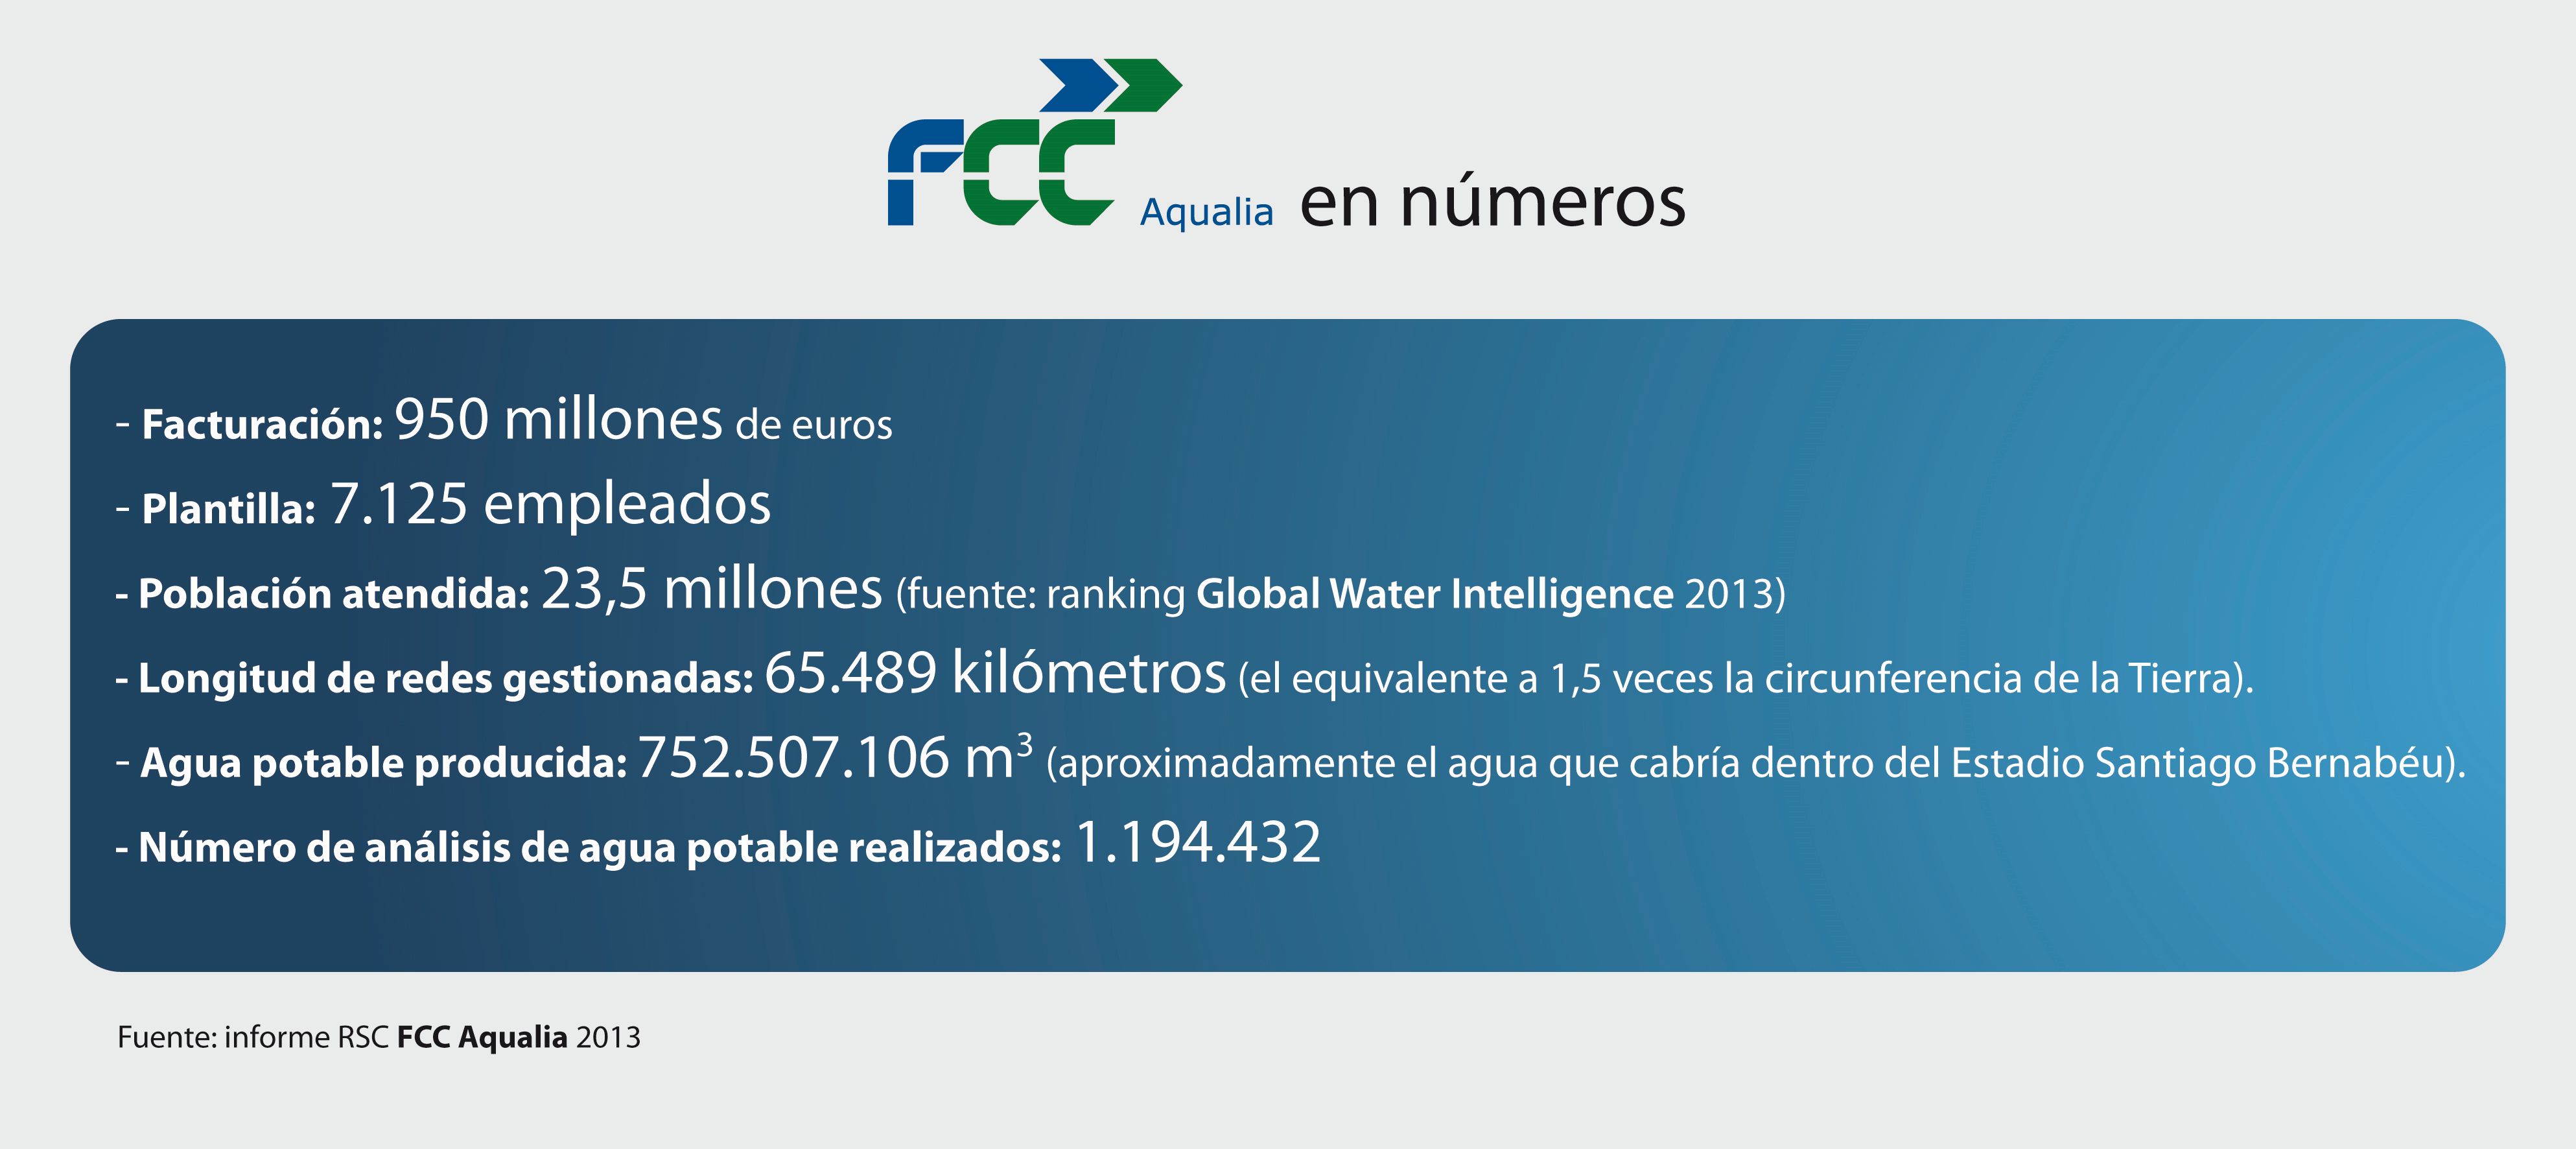 FCC Aqualia en números